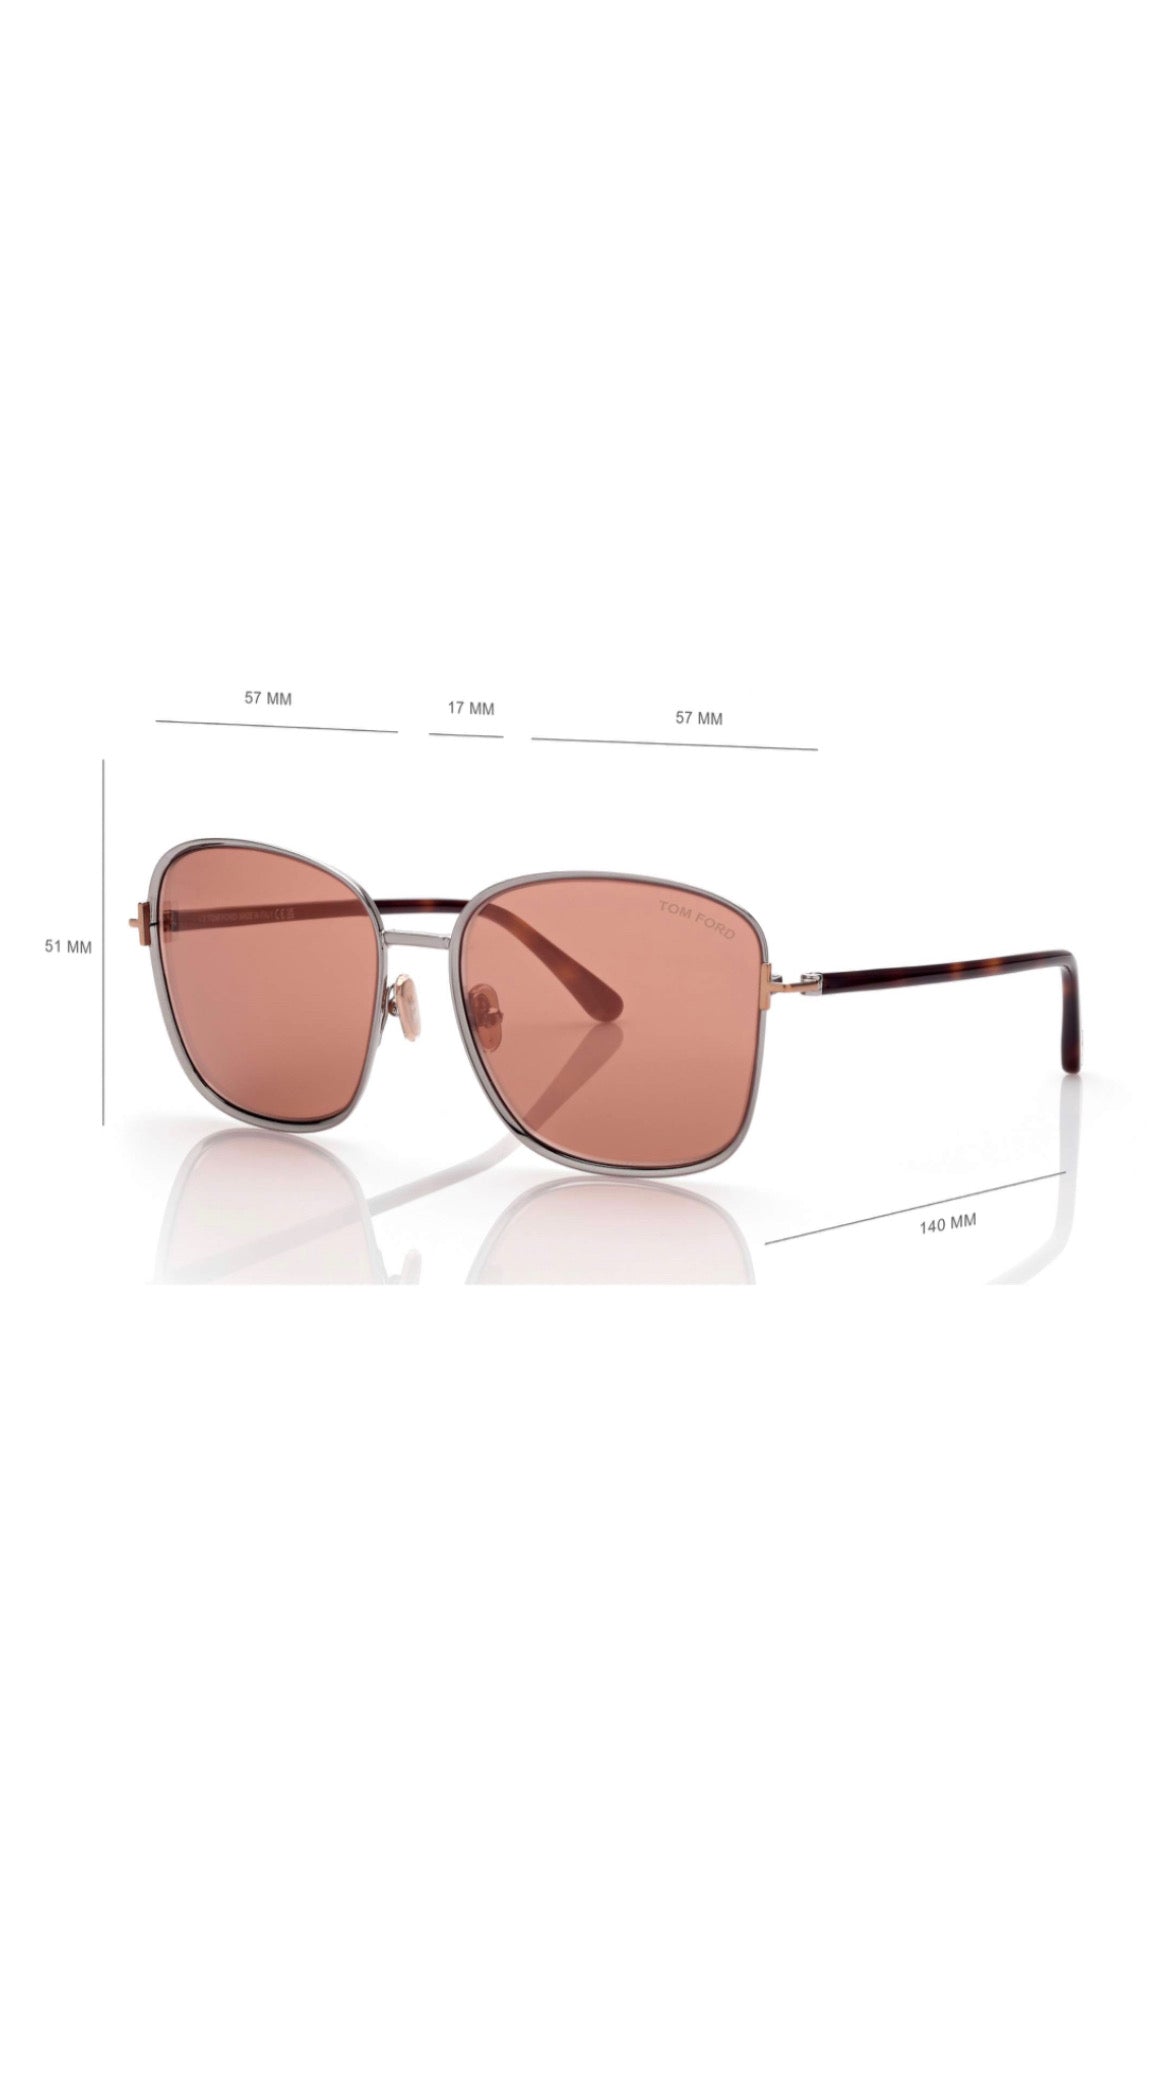 Tom Ford Sunglasses- Fern - Light Ruthenium/Rose Lenses